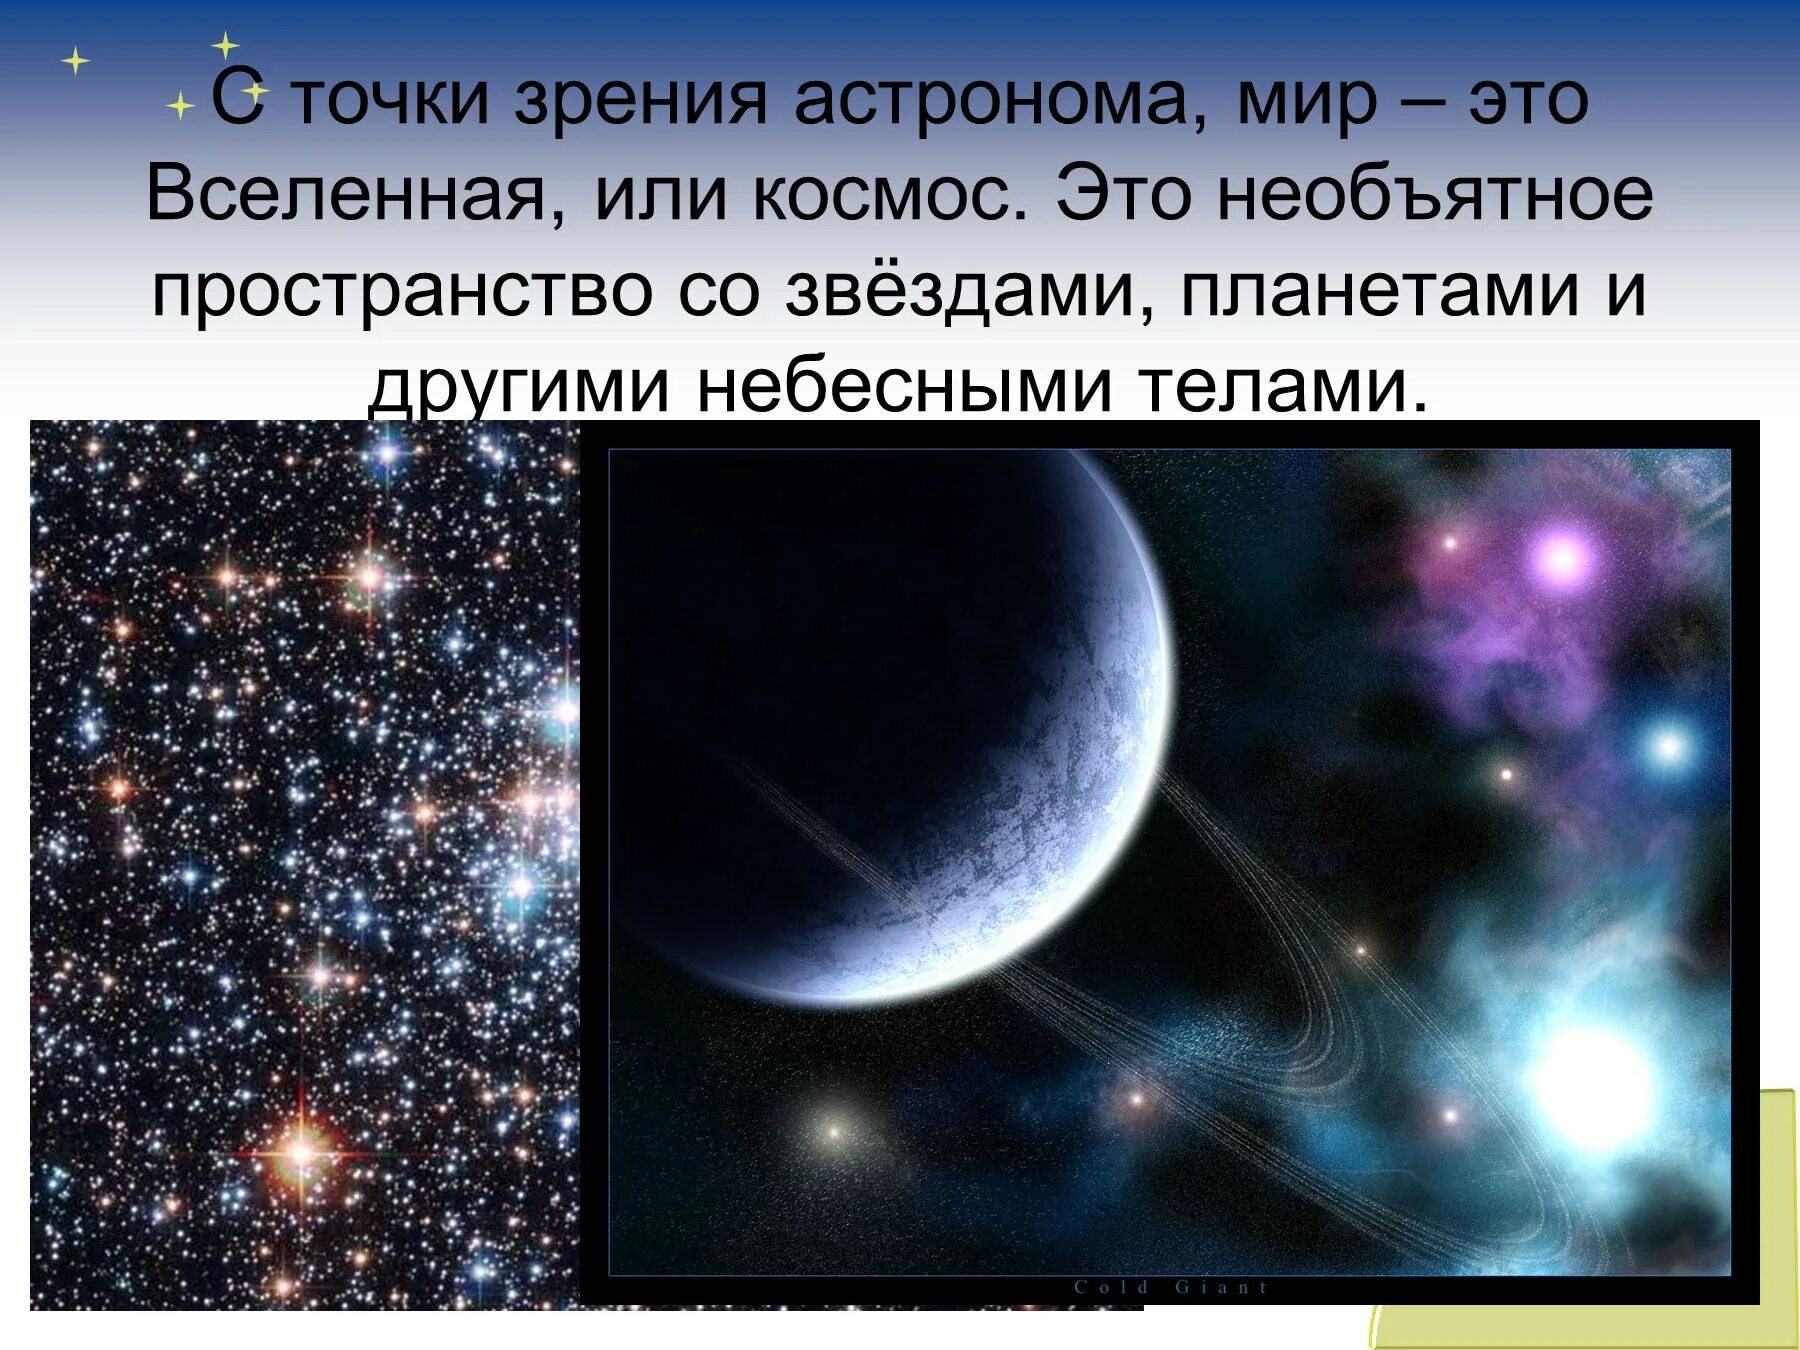 Сообщение о звездах и планетах. Проект на тему Вселенная. Небесные тела Вселенной. Информация о космосе. Призентация на тему космас.